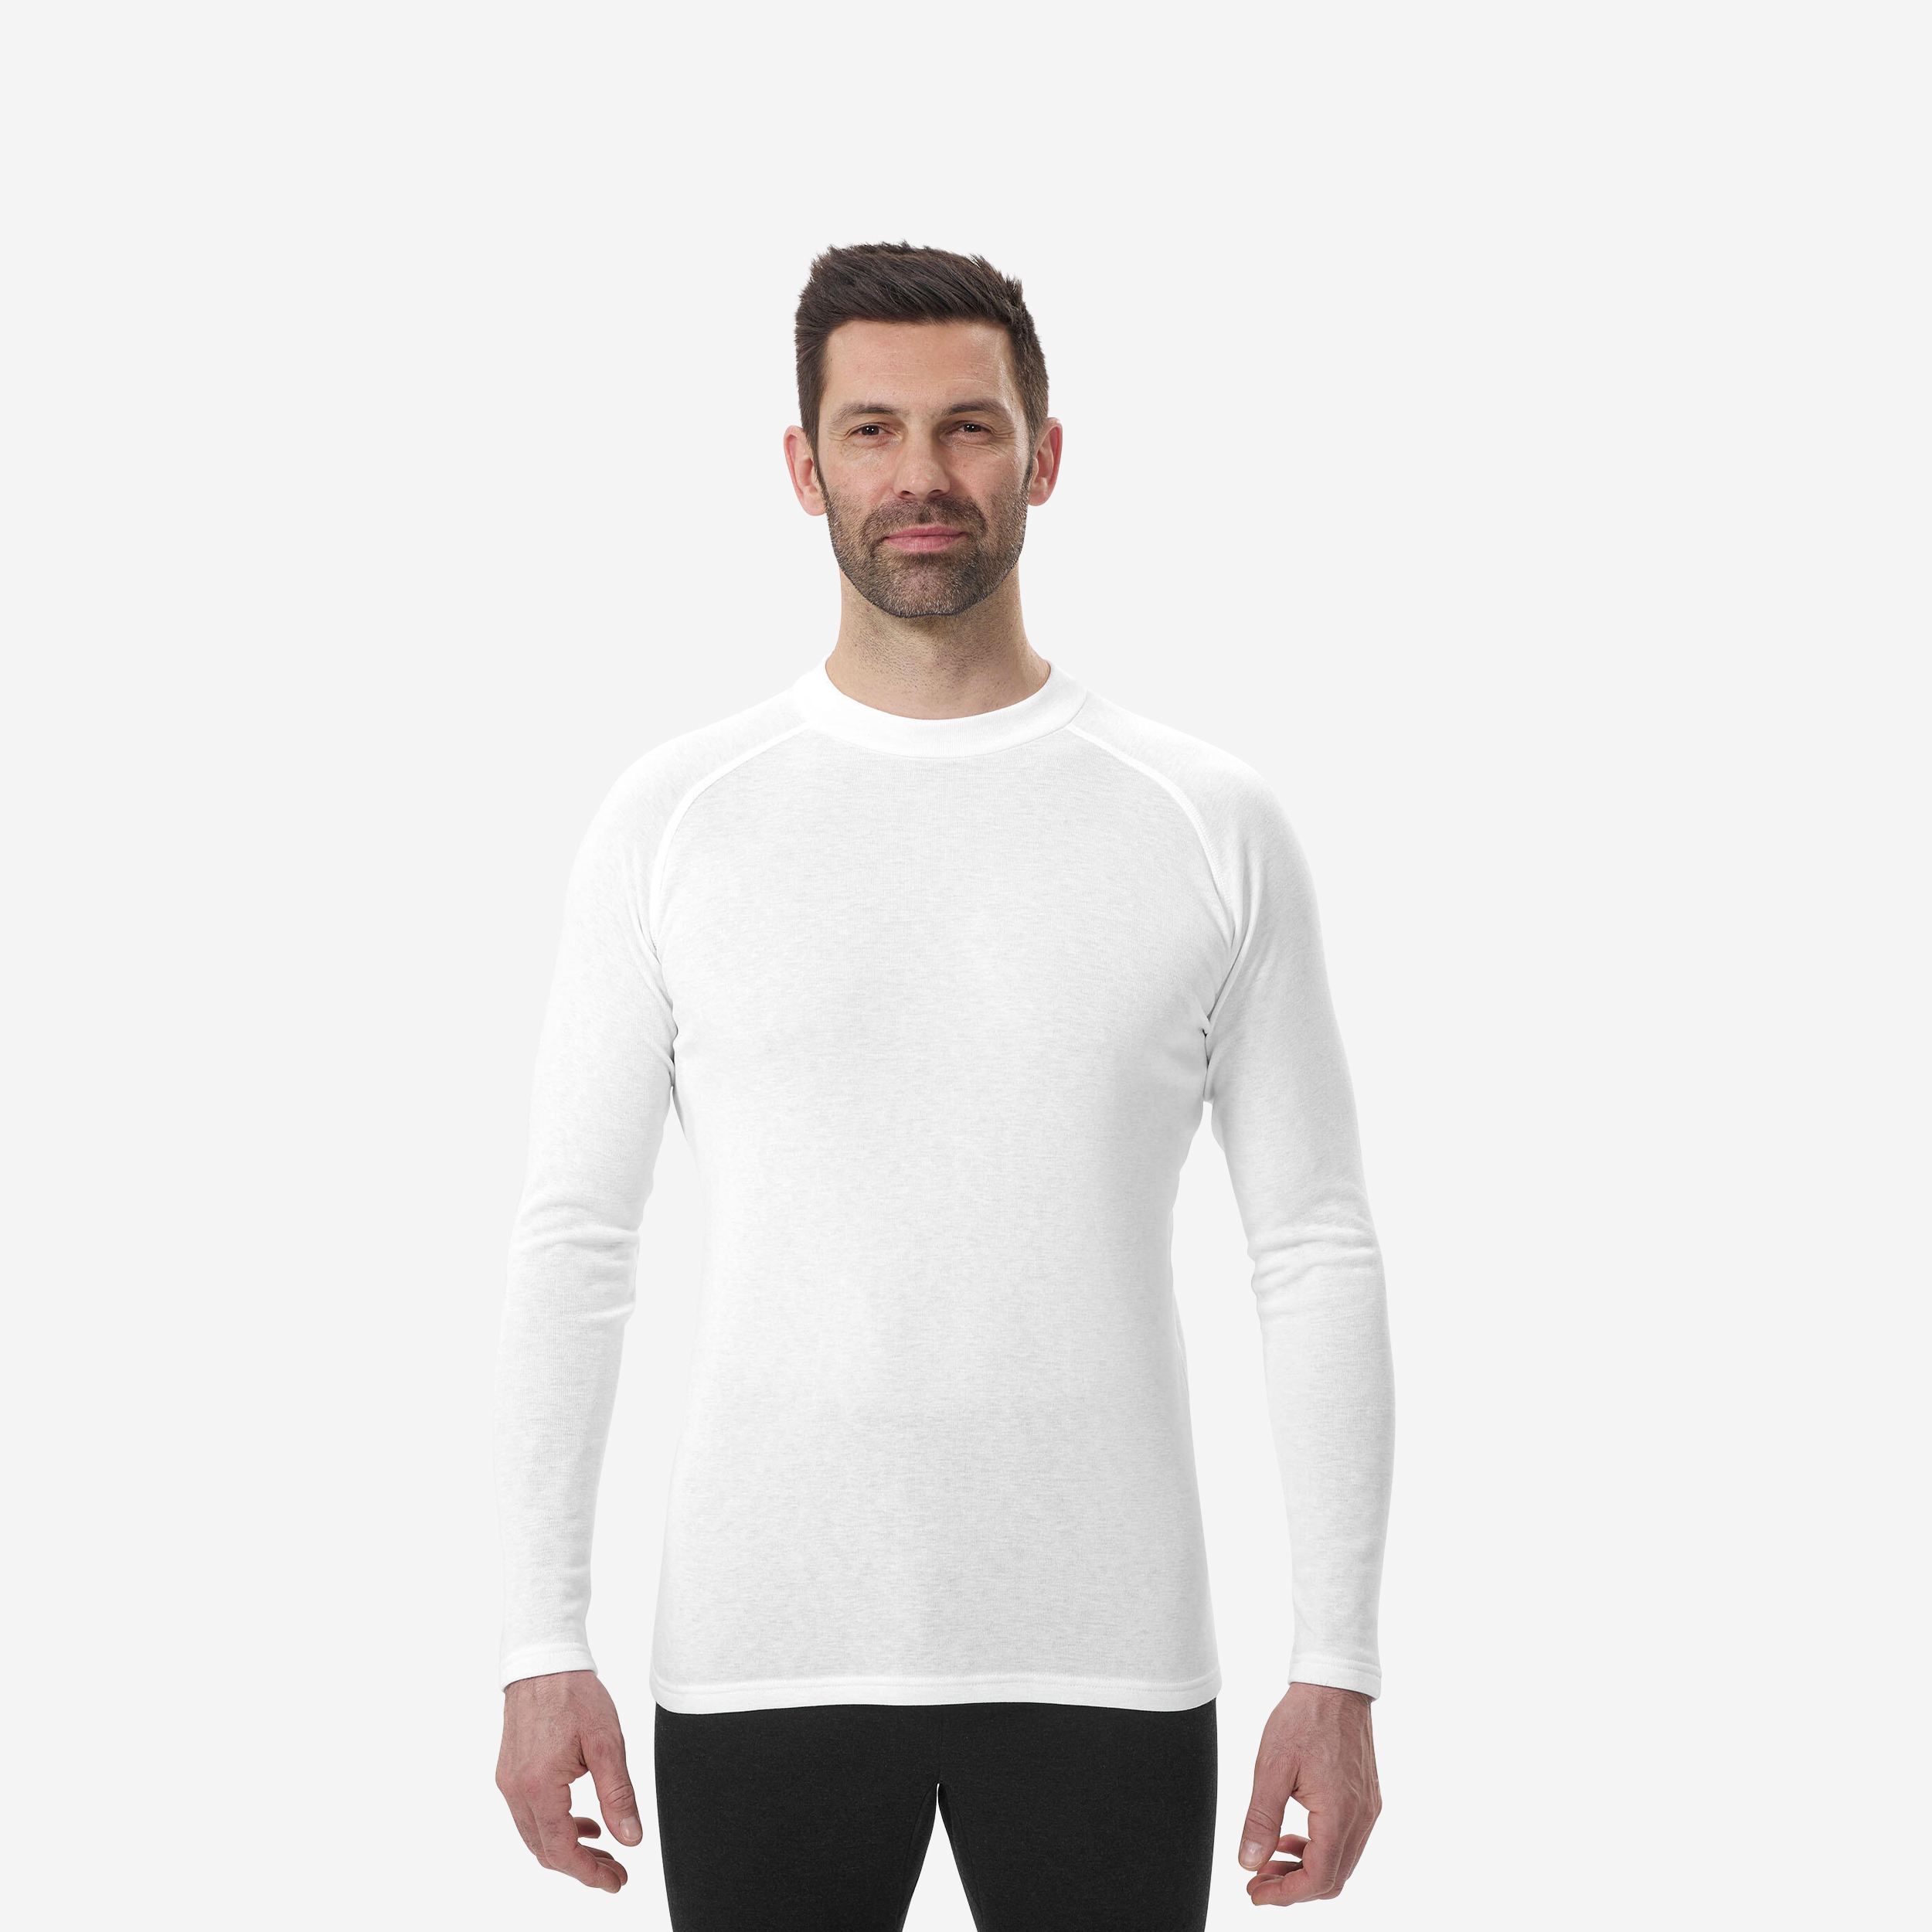 Sous-vêtement thermique de ski homme - BL 100  haut - Blanc